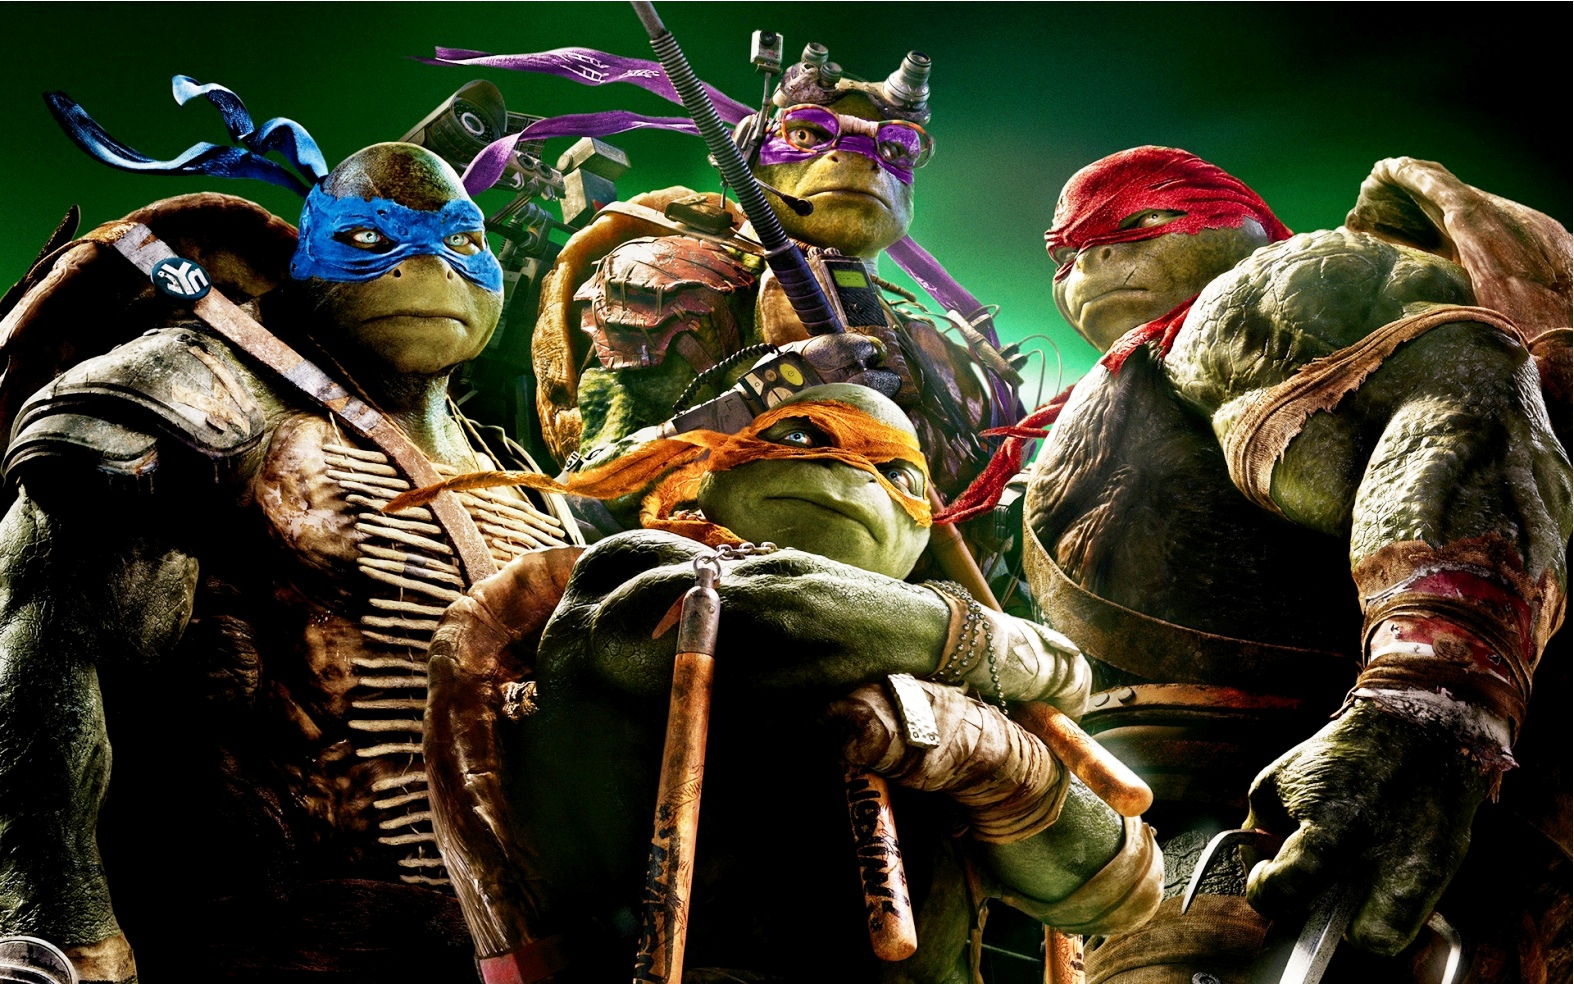 Teenage Mutant Ninja Turtles Tmnt Wallpaper